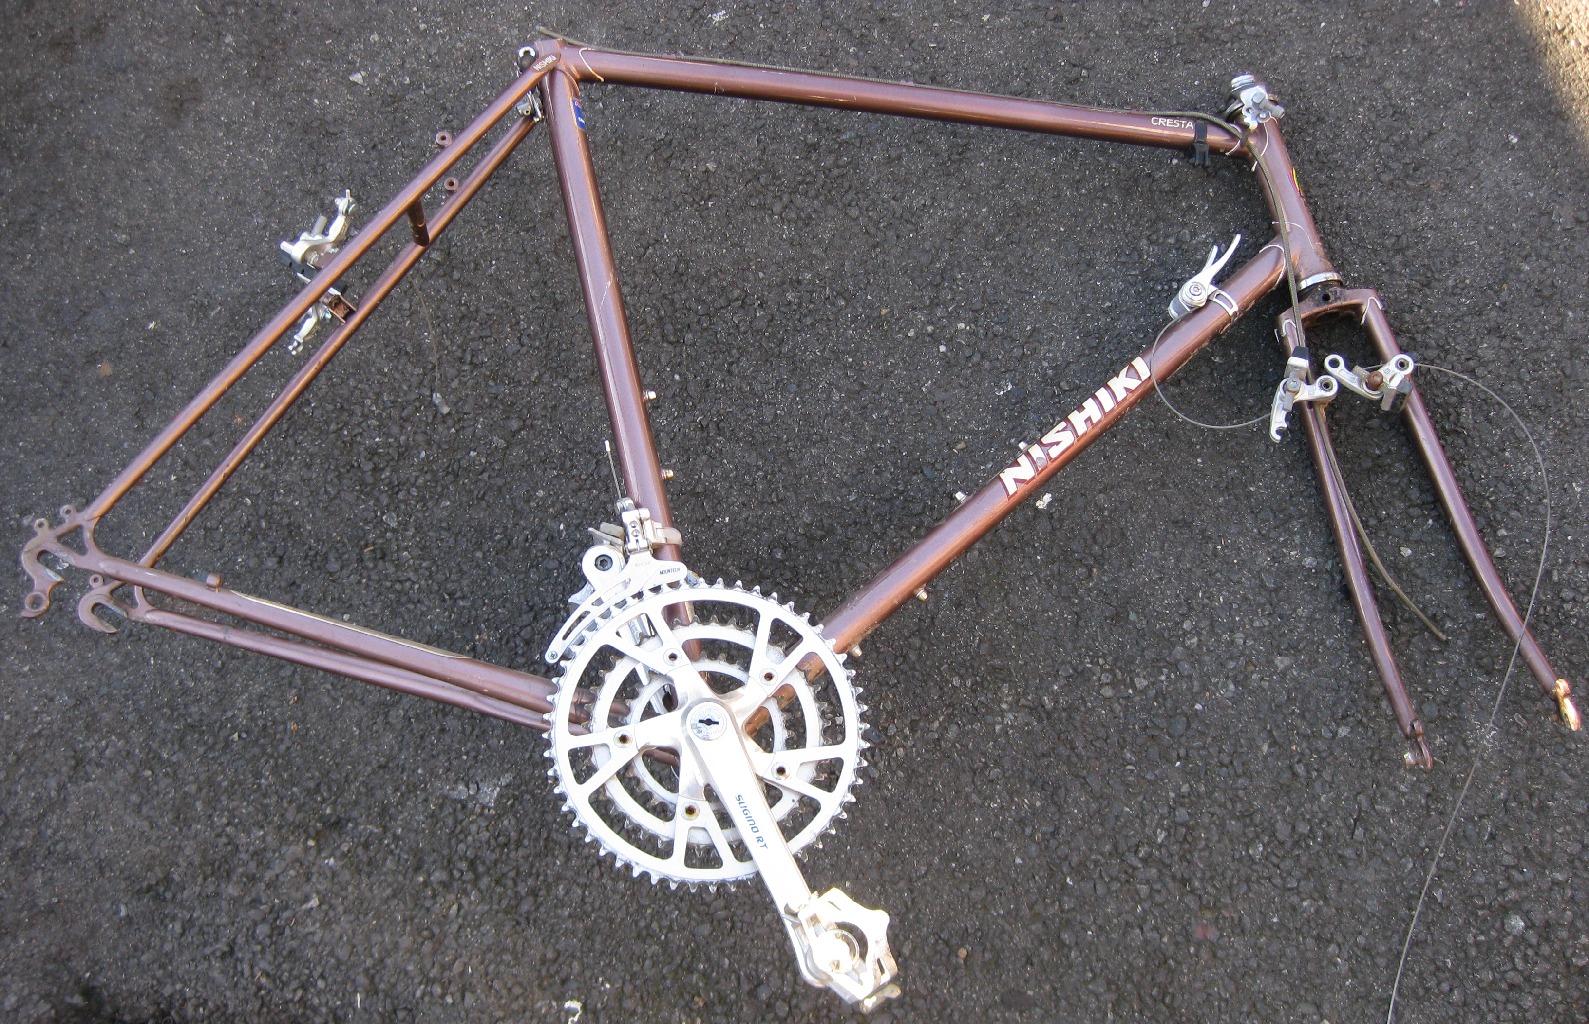 Nishiki Bike